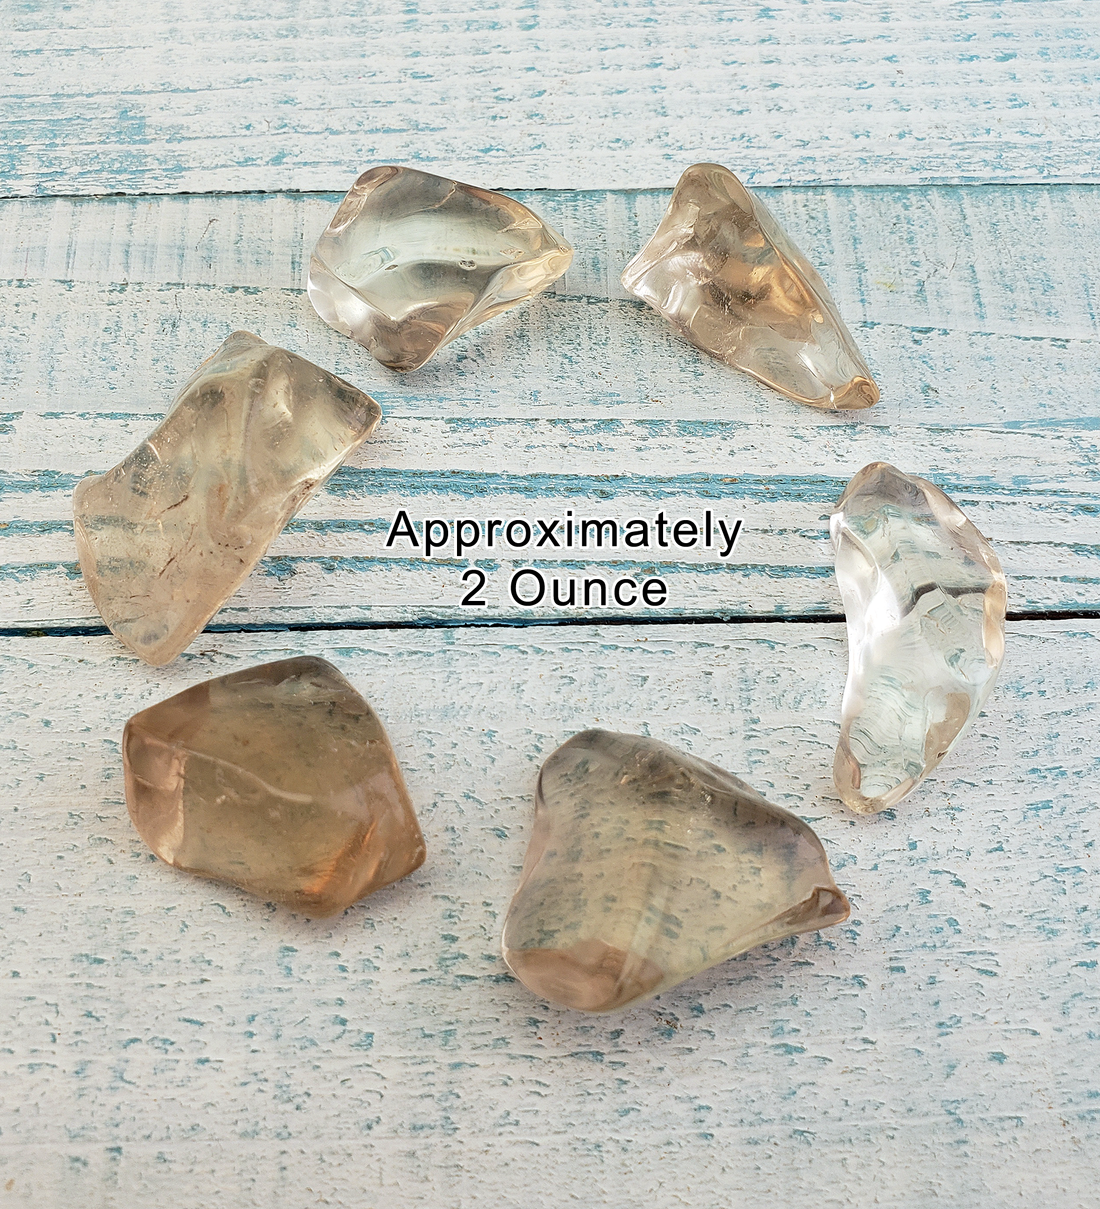 Smoky Quartz Tumbled Gemstone - One Stone or Bulk Wholesale Lots - 2 Ounces